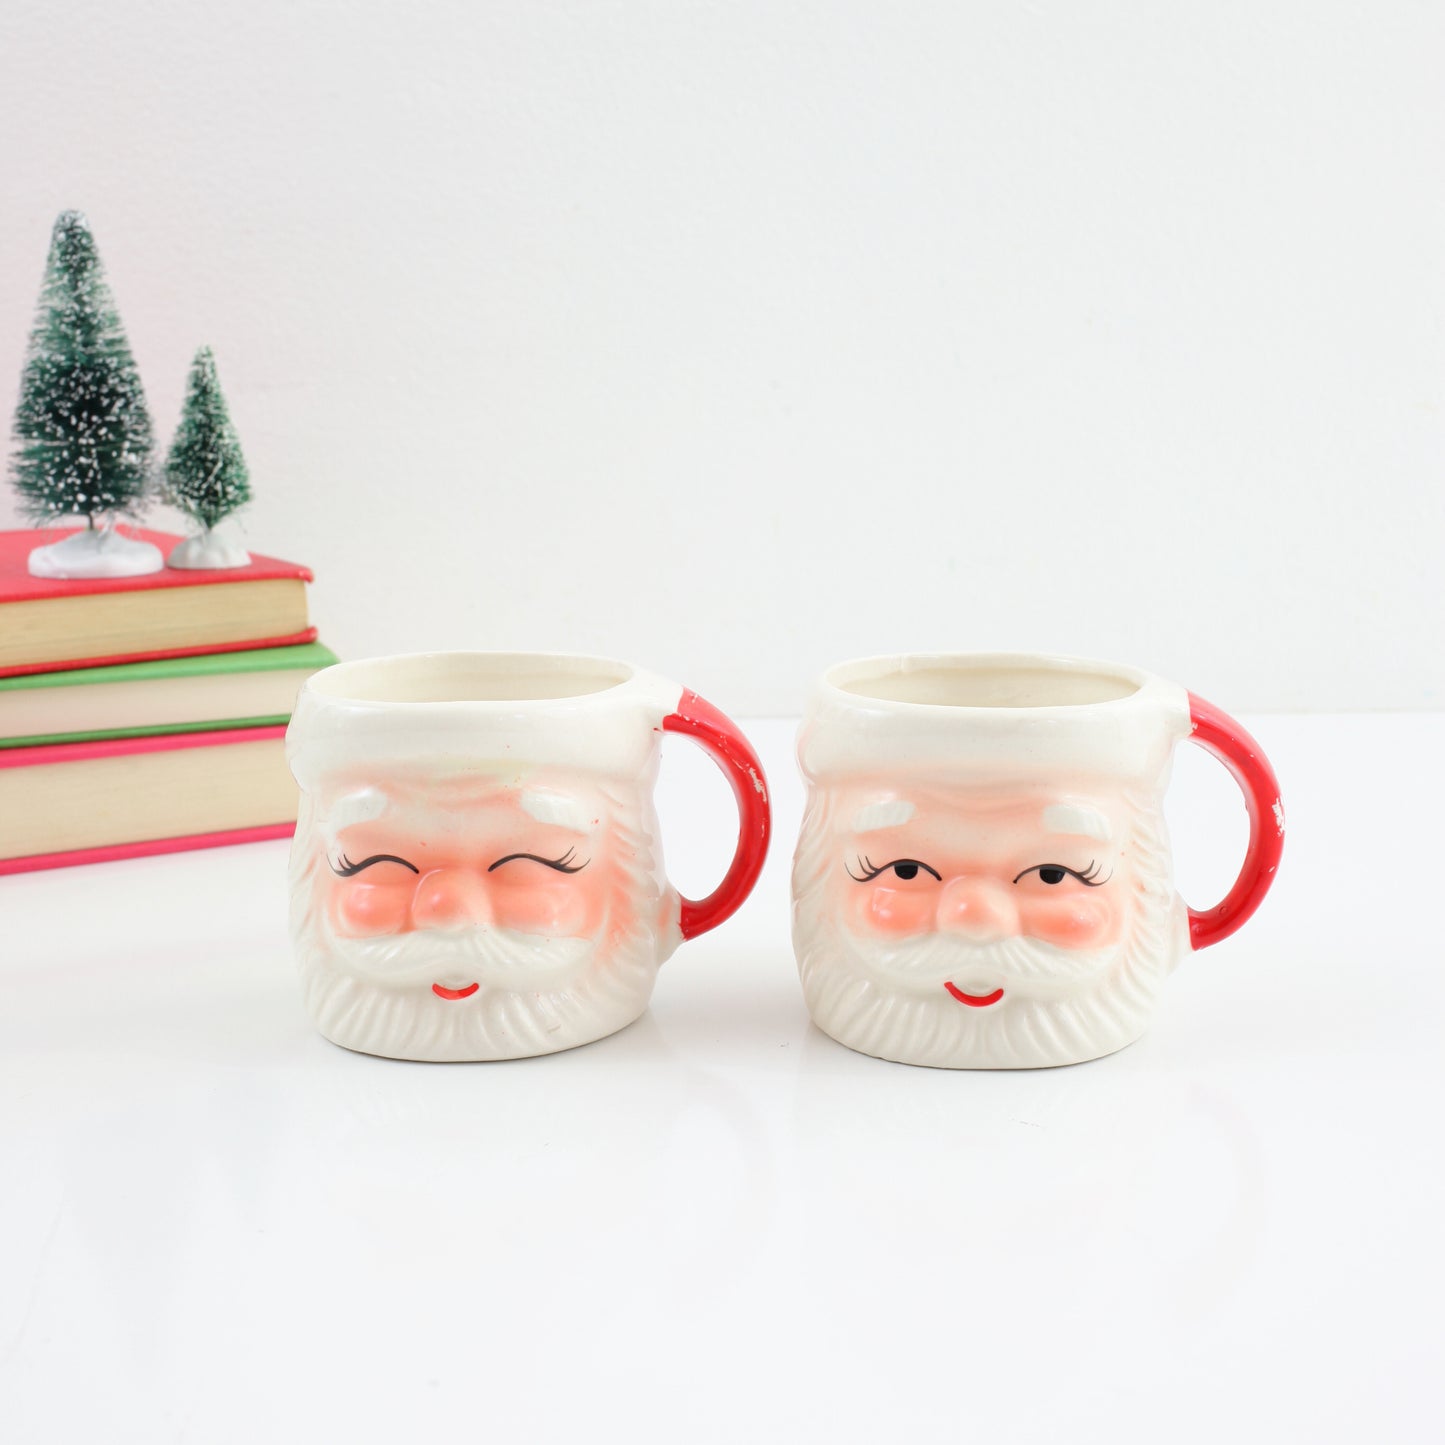 SOLD - Vintage Pair of Santa Mugs from Japan